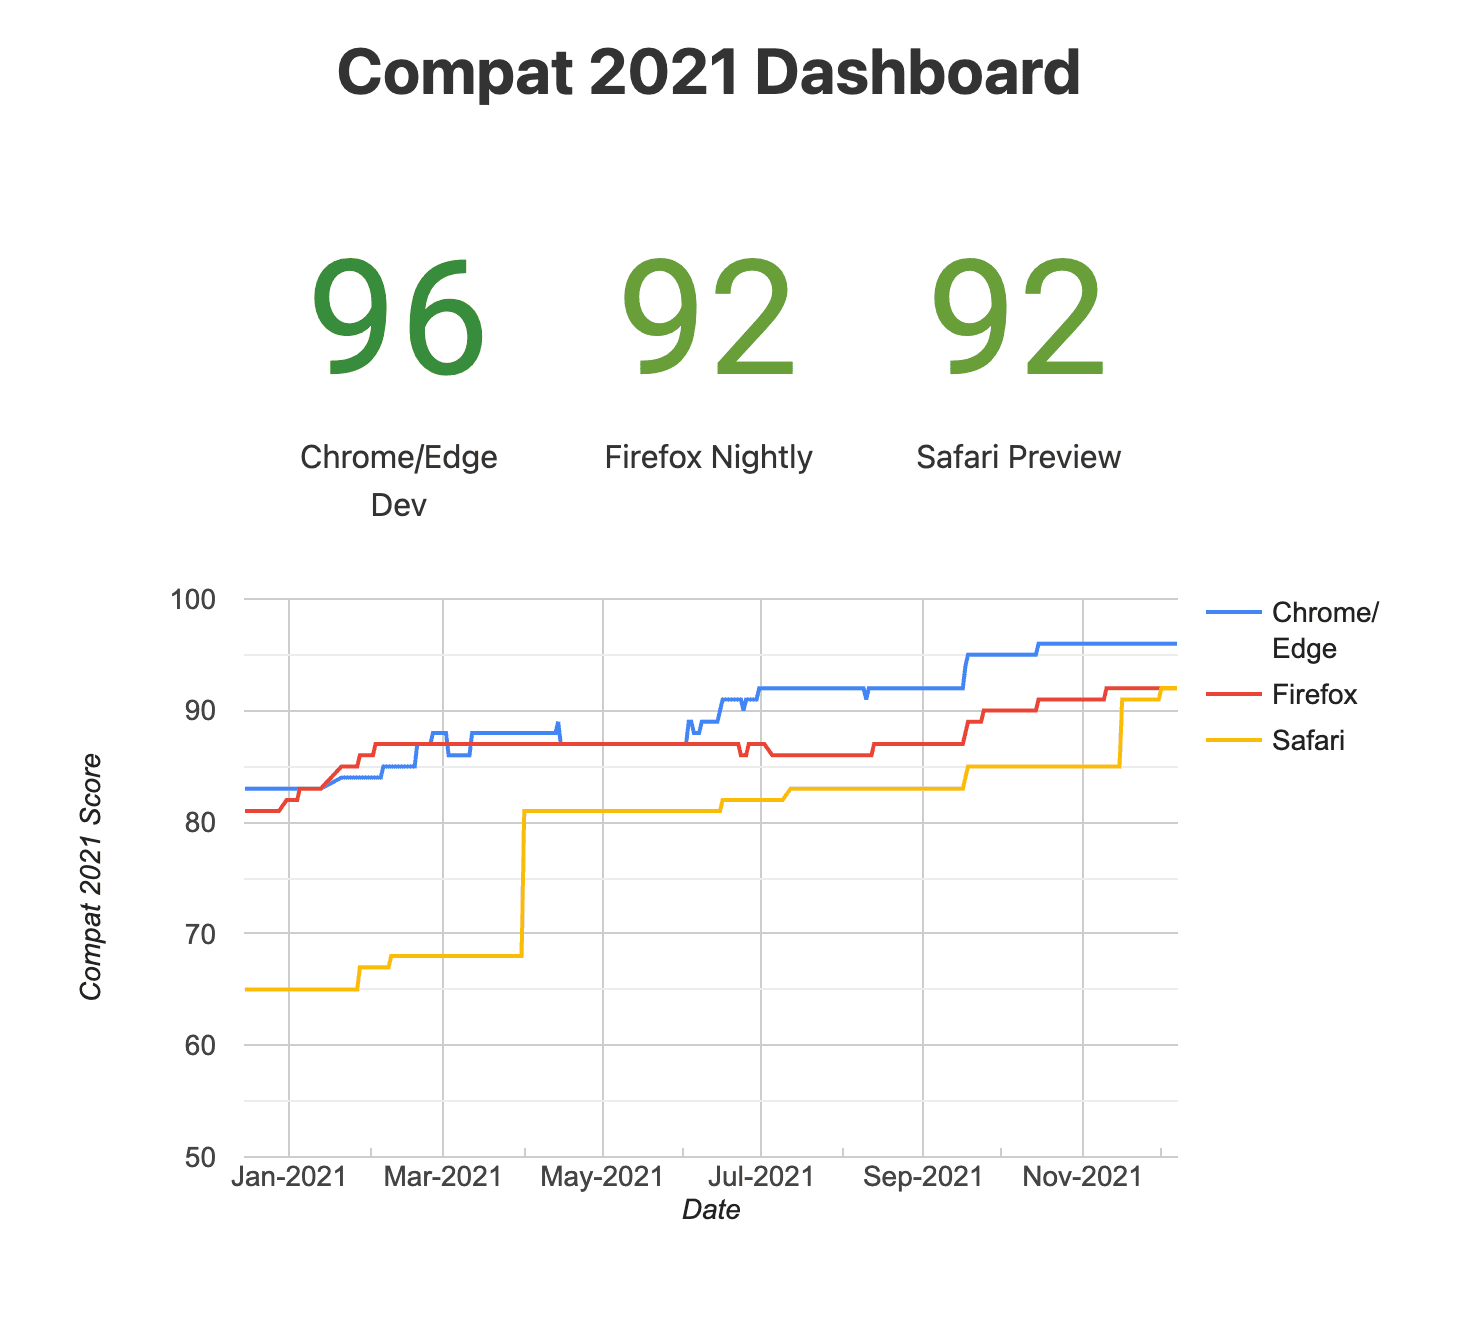 Compat का स्नैपशॉट
डैशबोर्ड (प्रयोग के तौर पर उपलब्ध ब्राउज़र)